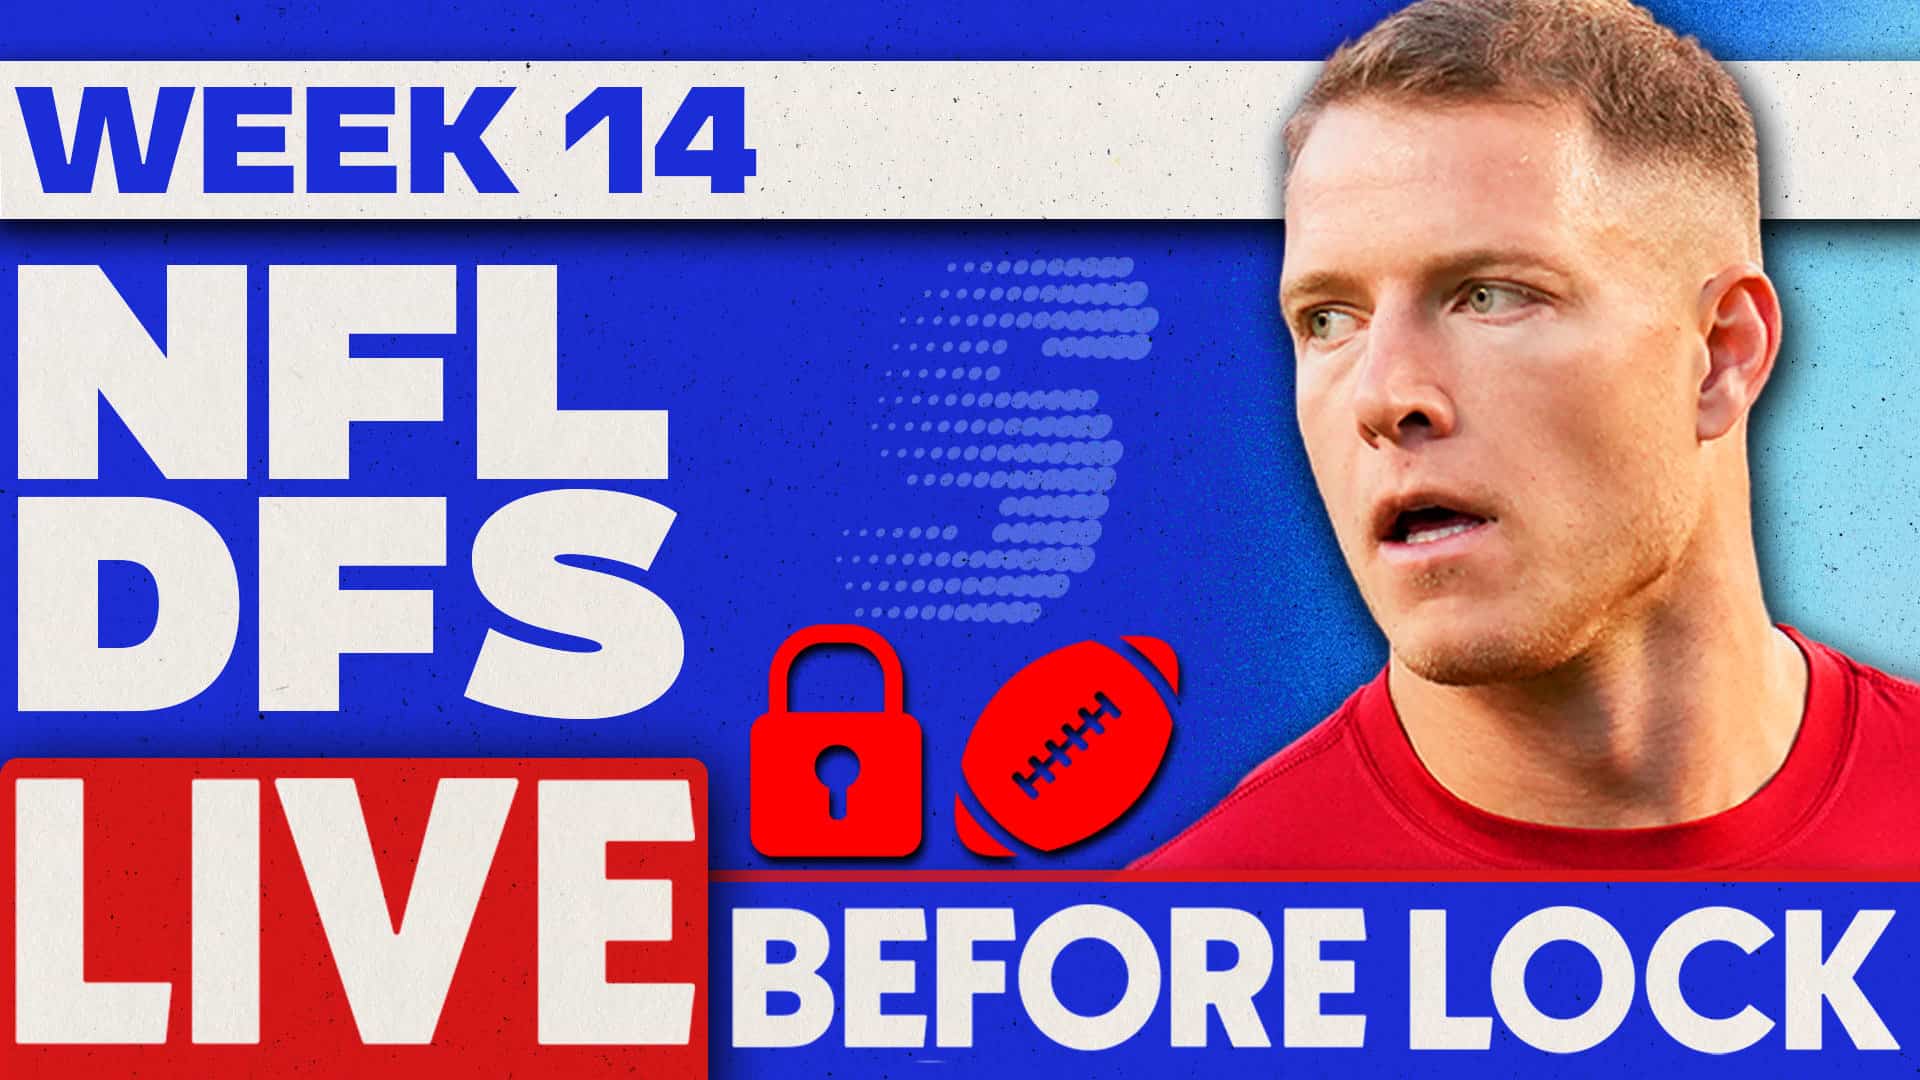 Week 14 NFL DFS Picks: 4 Hour Live Before Lock (December 10)